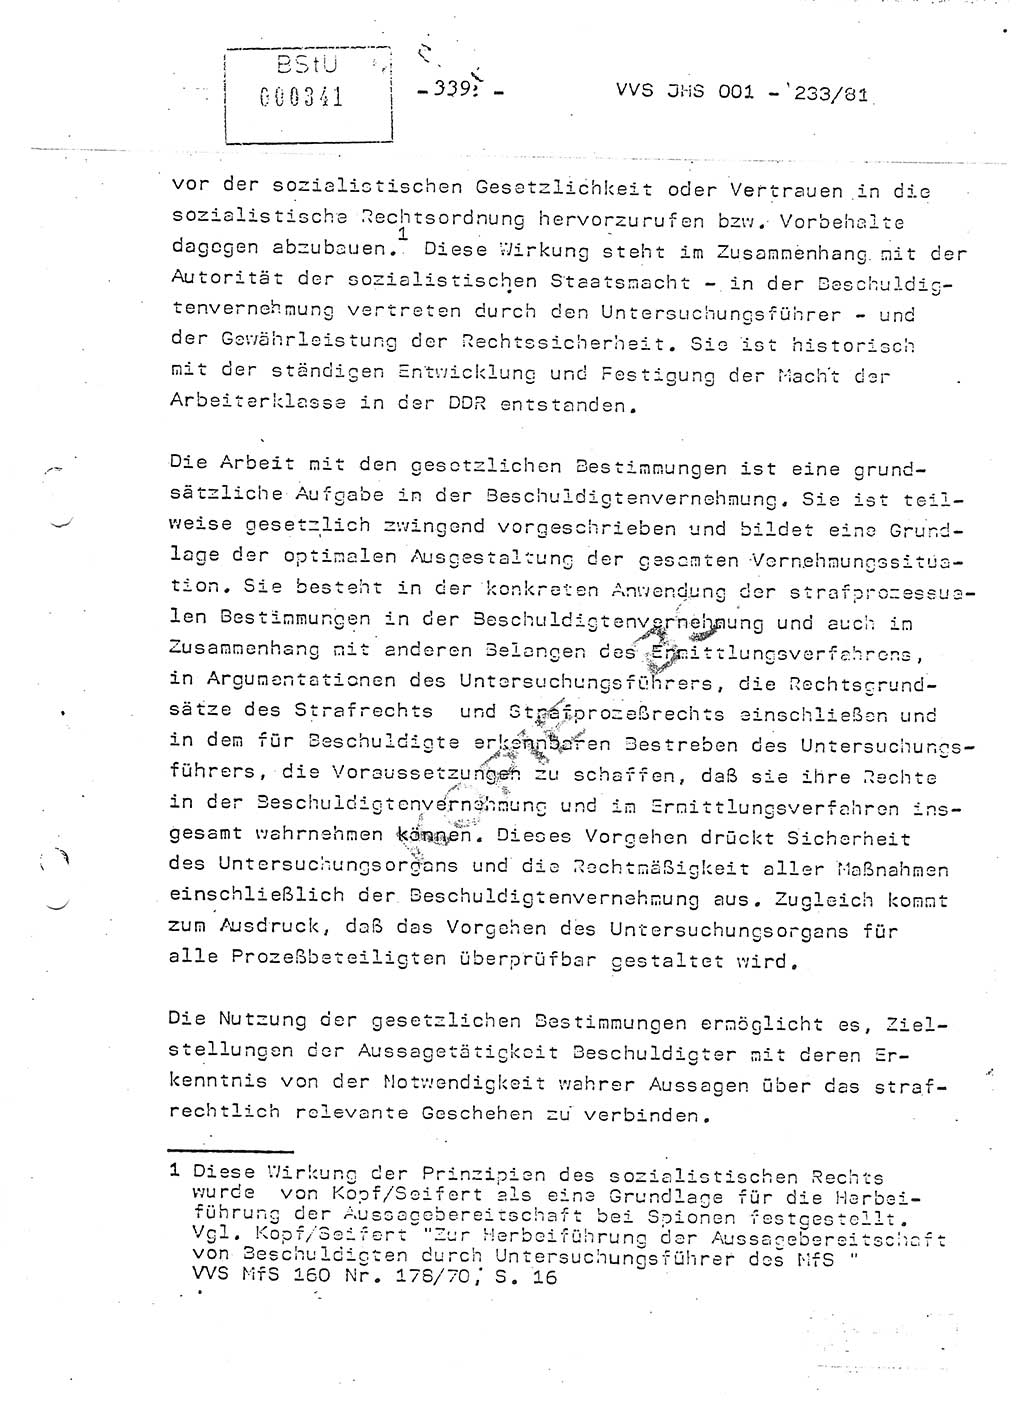 Dissertation Oberstleutnant Horst Zank (JHS), Oberstleutnant Dr. Karl-Heinz Knoblauch (JHS), Oberstleutnant Gustav-Adolf Kowalewski (HA Ⅸ), Oberstleutnant Wolfgang Plötner (HA Ⅸ), Ministerium für Staatssicherheit (MfS) [Deutsche Demokratische Republik (DDR)], Juristische Hochschule (JHS), Vertrauliche Verschlußsache (VVS) o001-233/81, Potsdam 1981, Blatt 339 (Diss. MfS DDR JHS VVS o001-233/81 1981, Bl. 339)